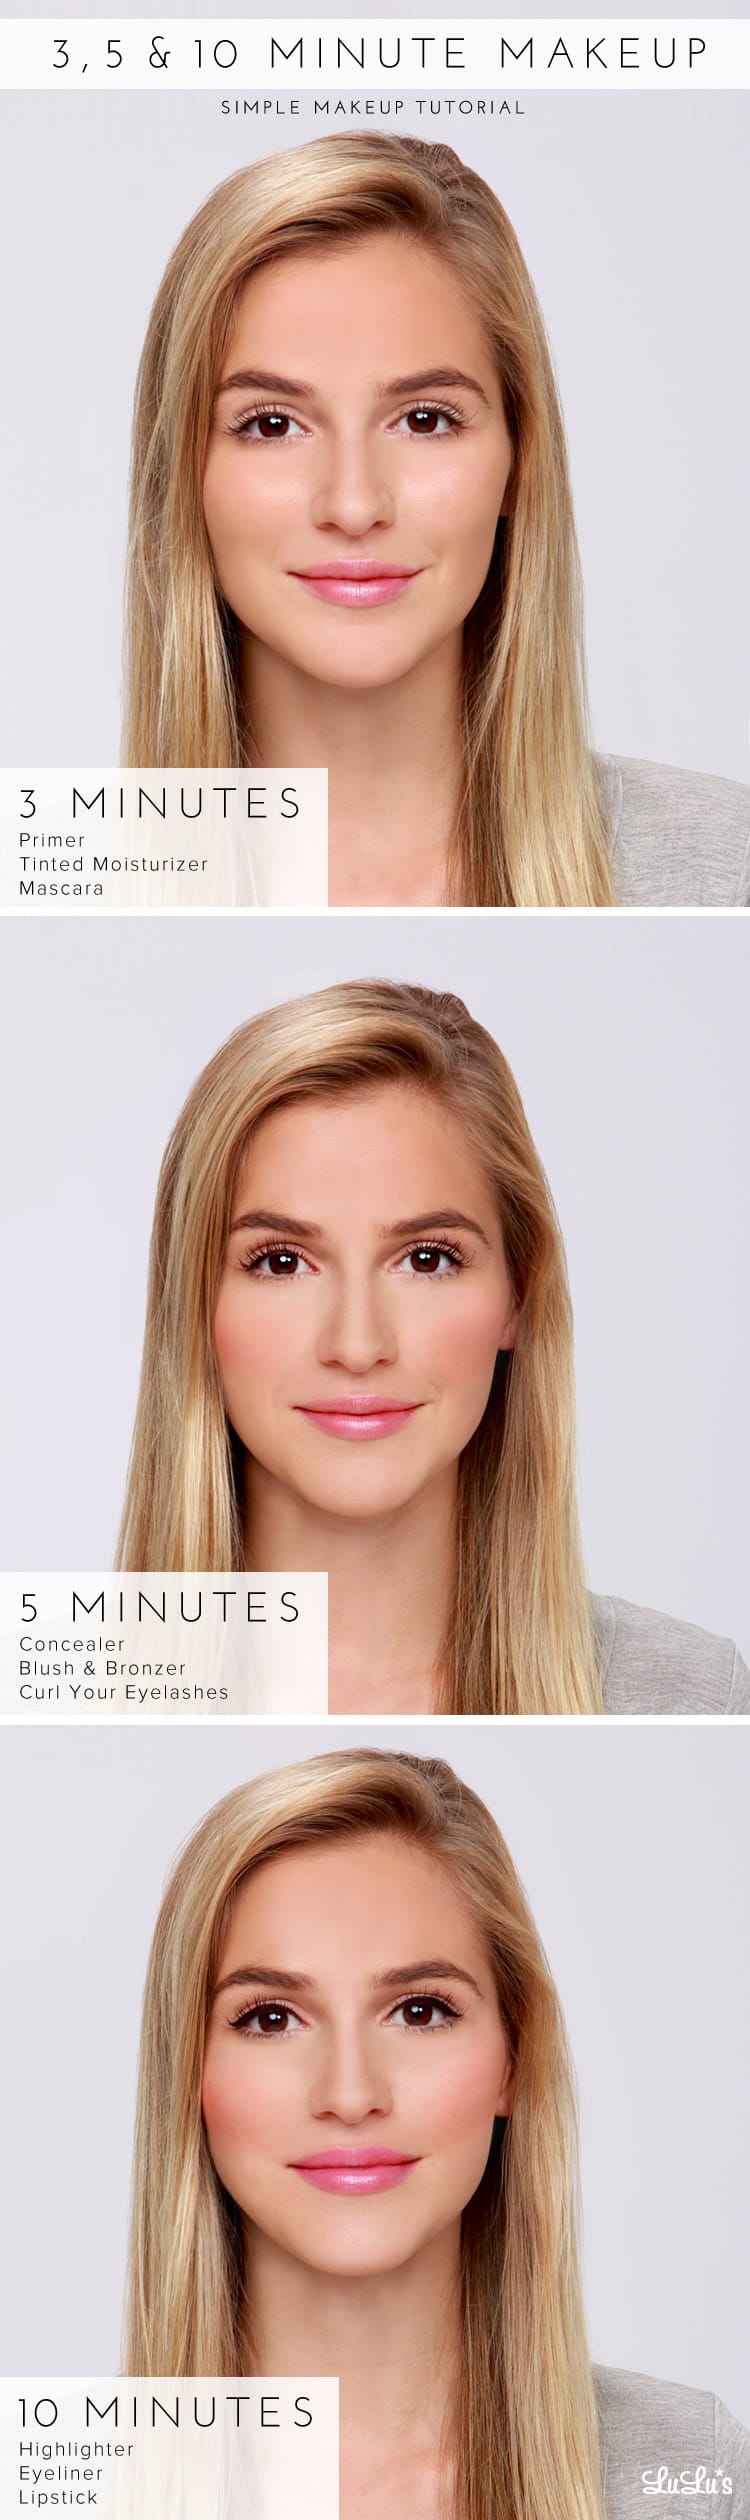 Lulus 3, 5 & 10 Minute Makeup Tutorial - Lulus.com Fashion